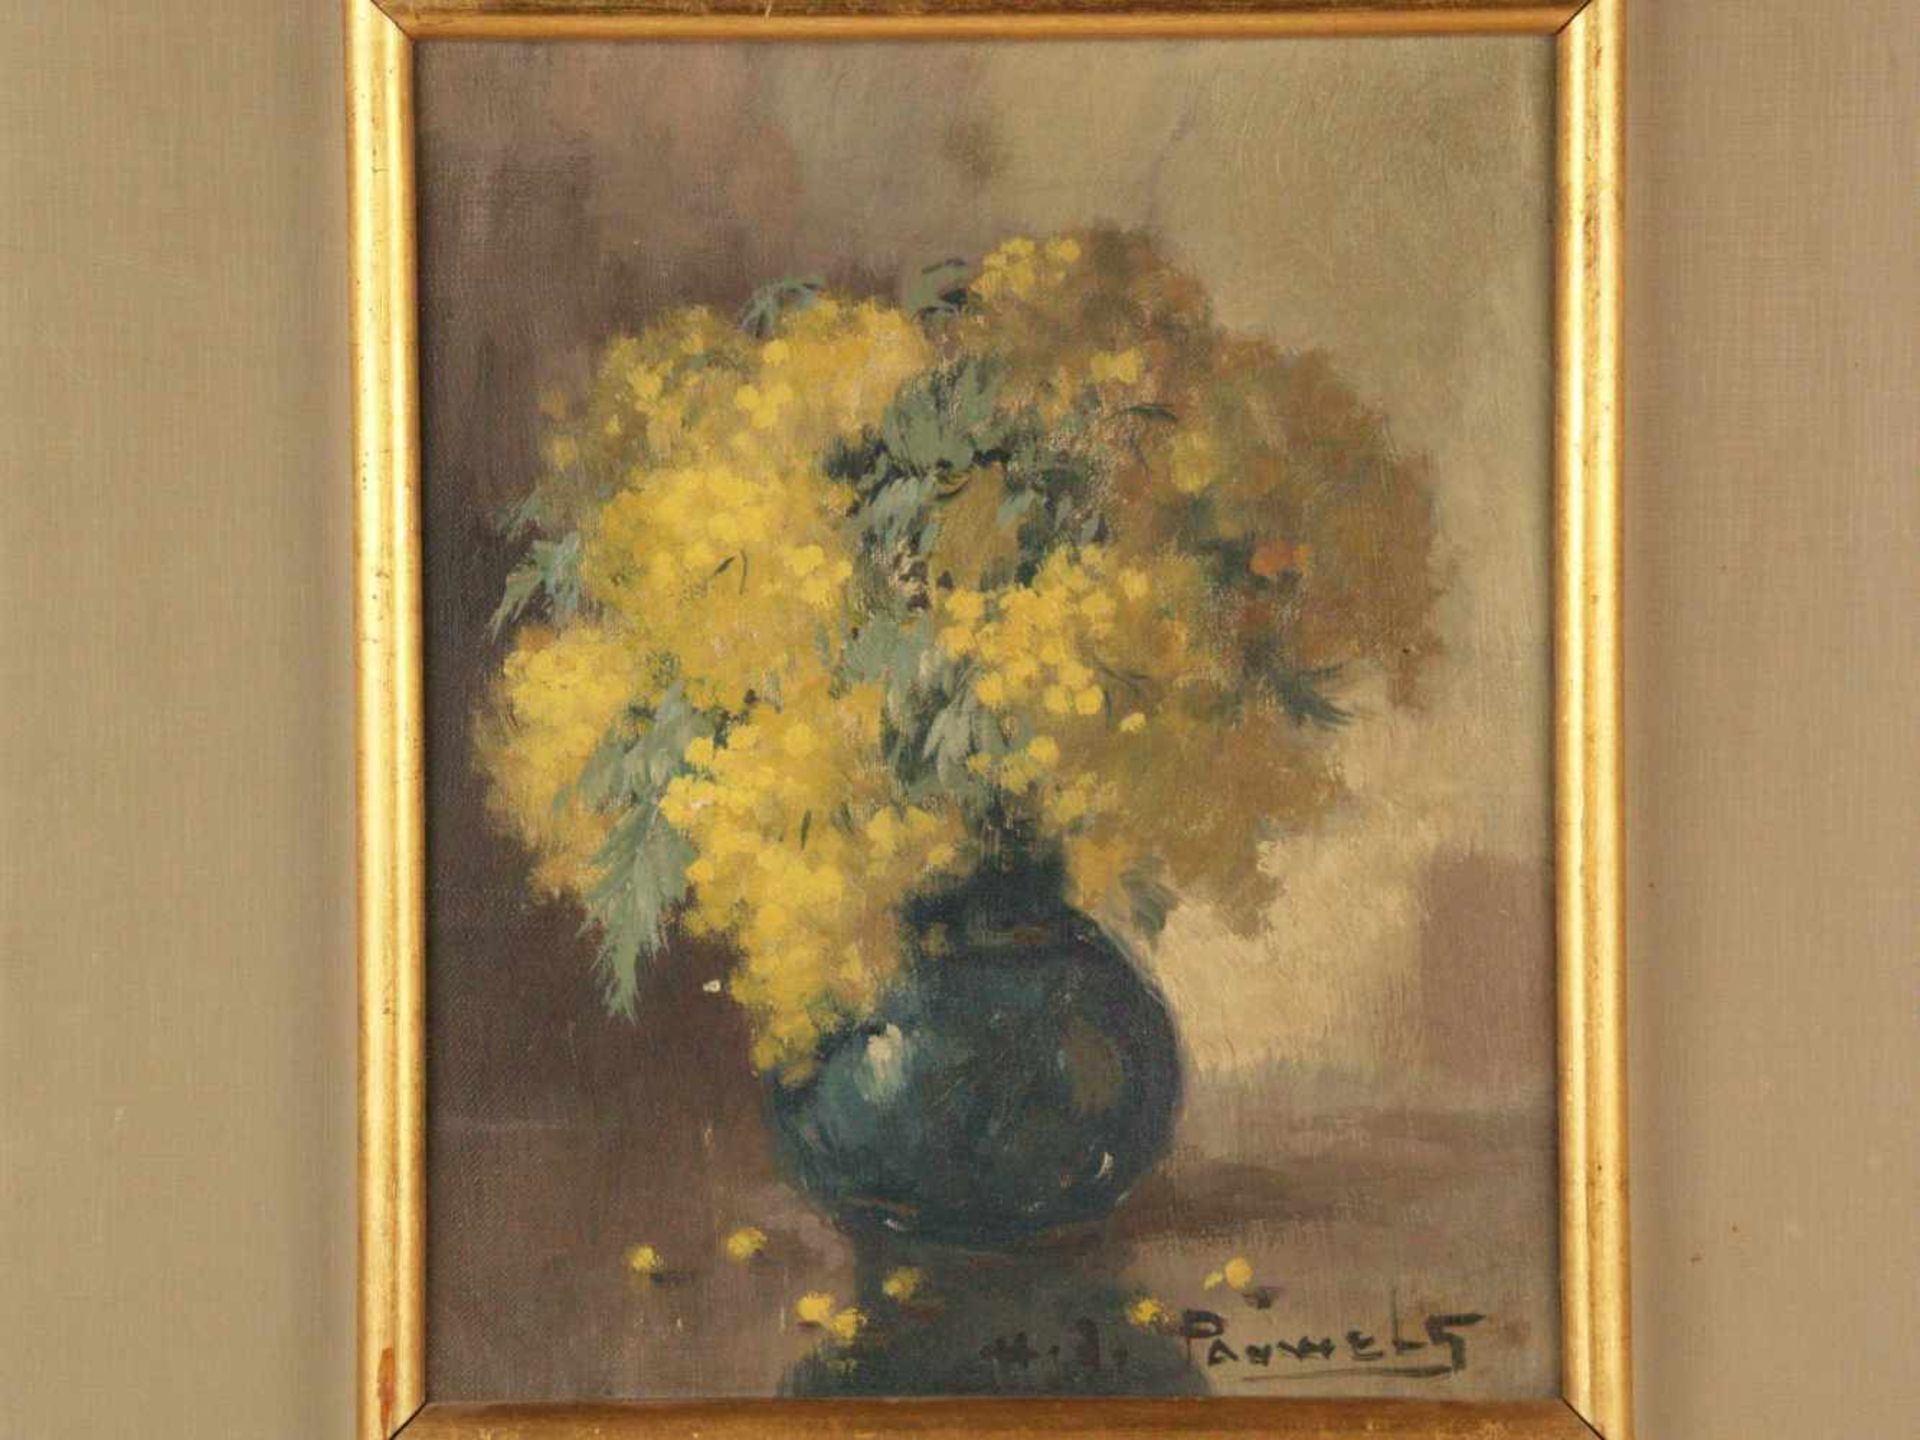 Pauwels, Henri Joseph (1903-1983, belgischer Maler) - Stillleben mit gelben Mimosen, Öl auf